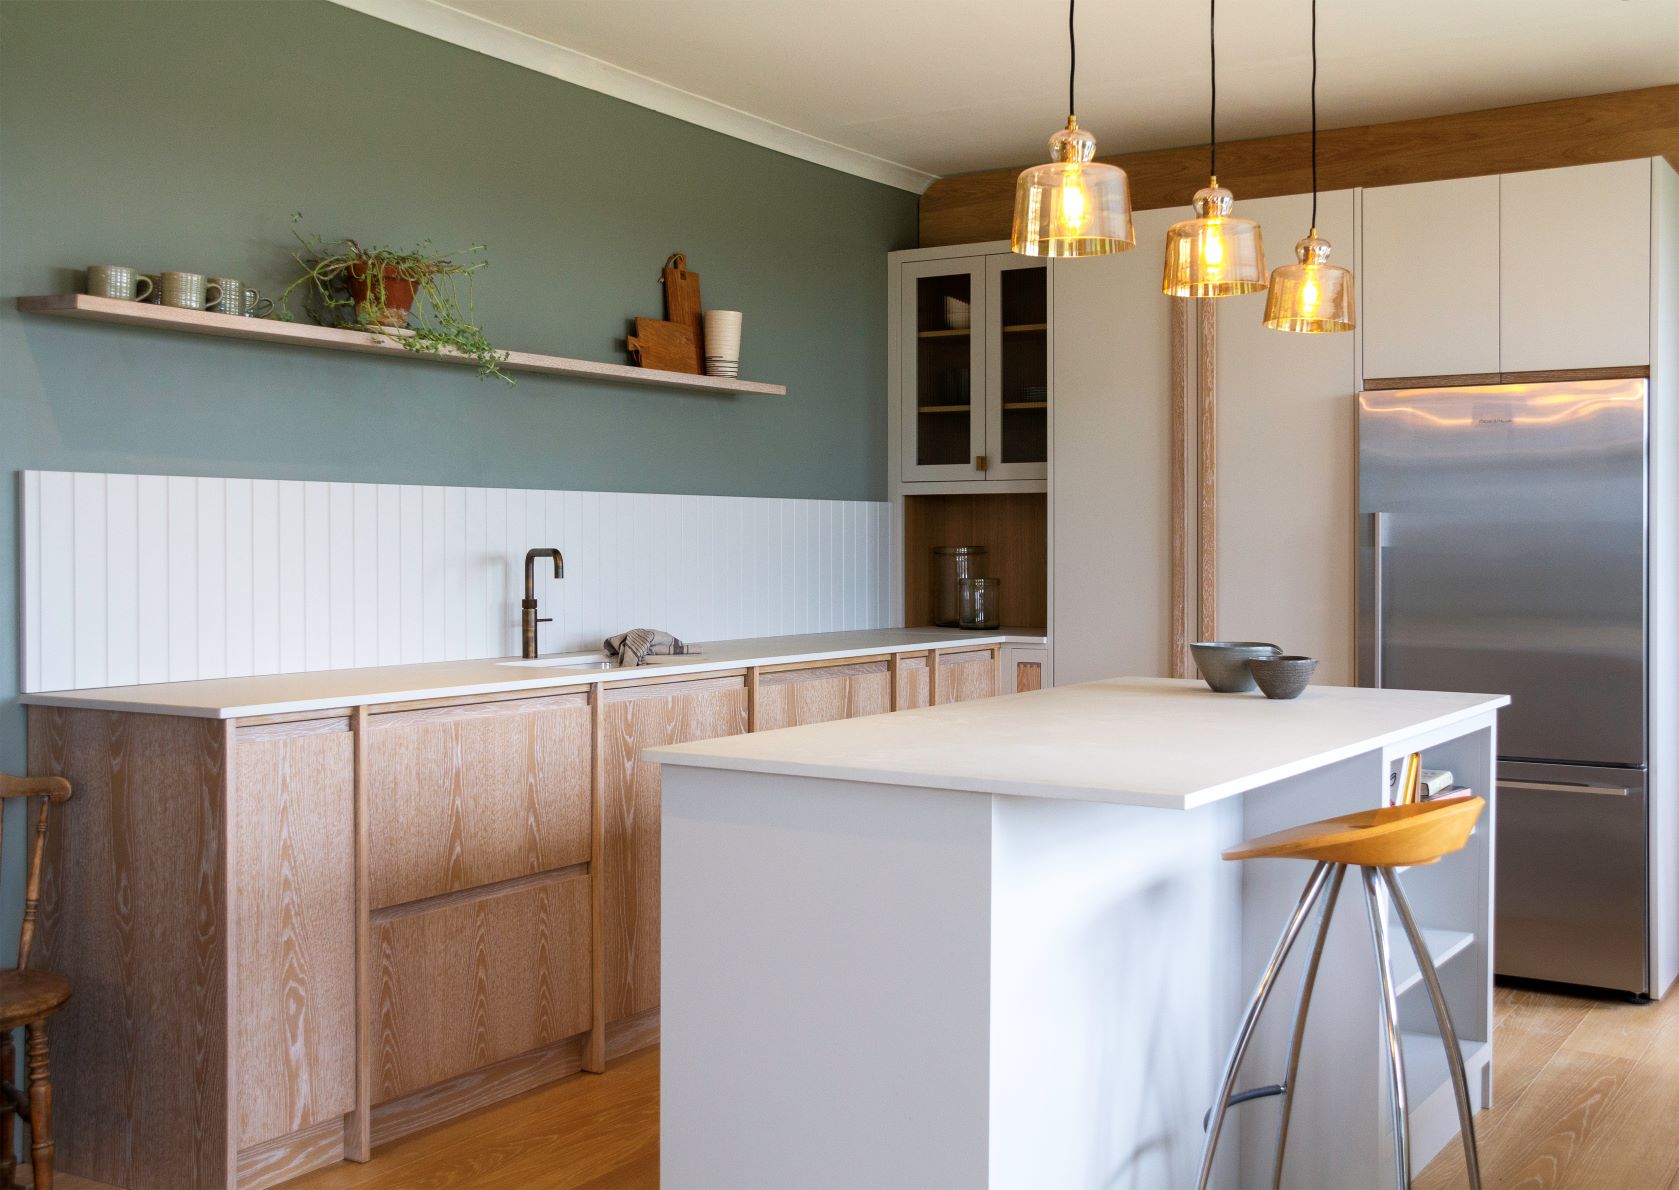 Từ nhẹ nhàng đến sang trọng, đây là những thiết kế nhà bếp với gam màu xanh lá khiến bạn không chê vào đâu được - Ảnh 3.